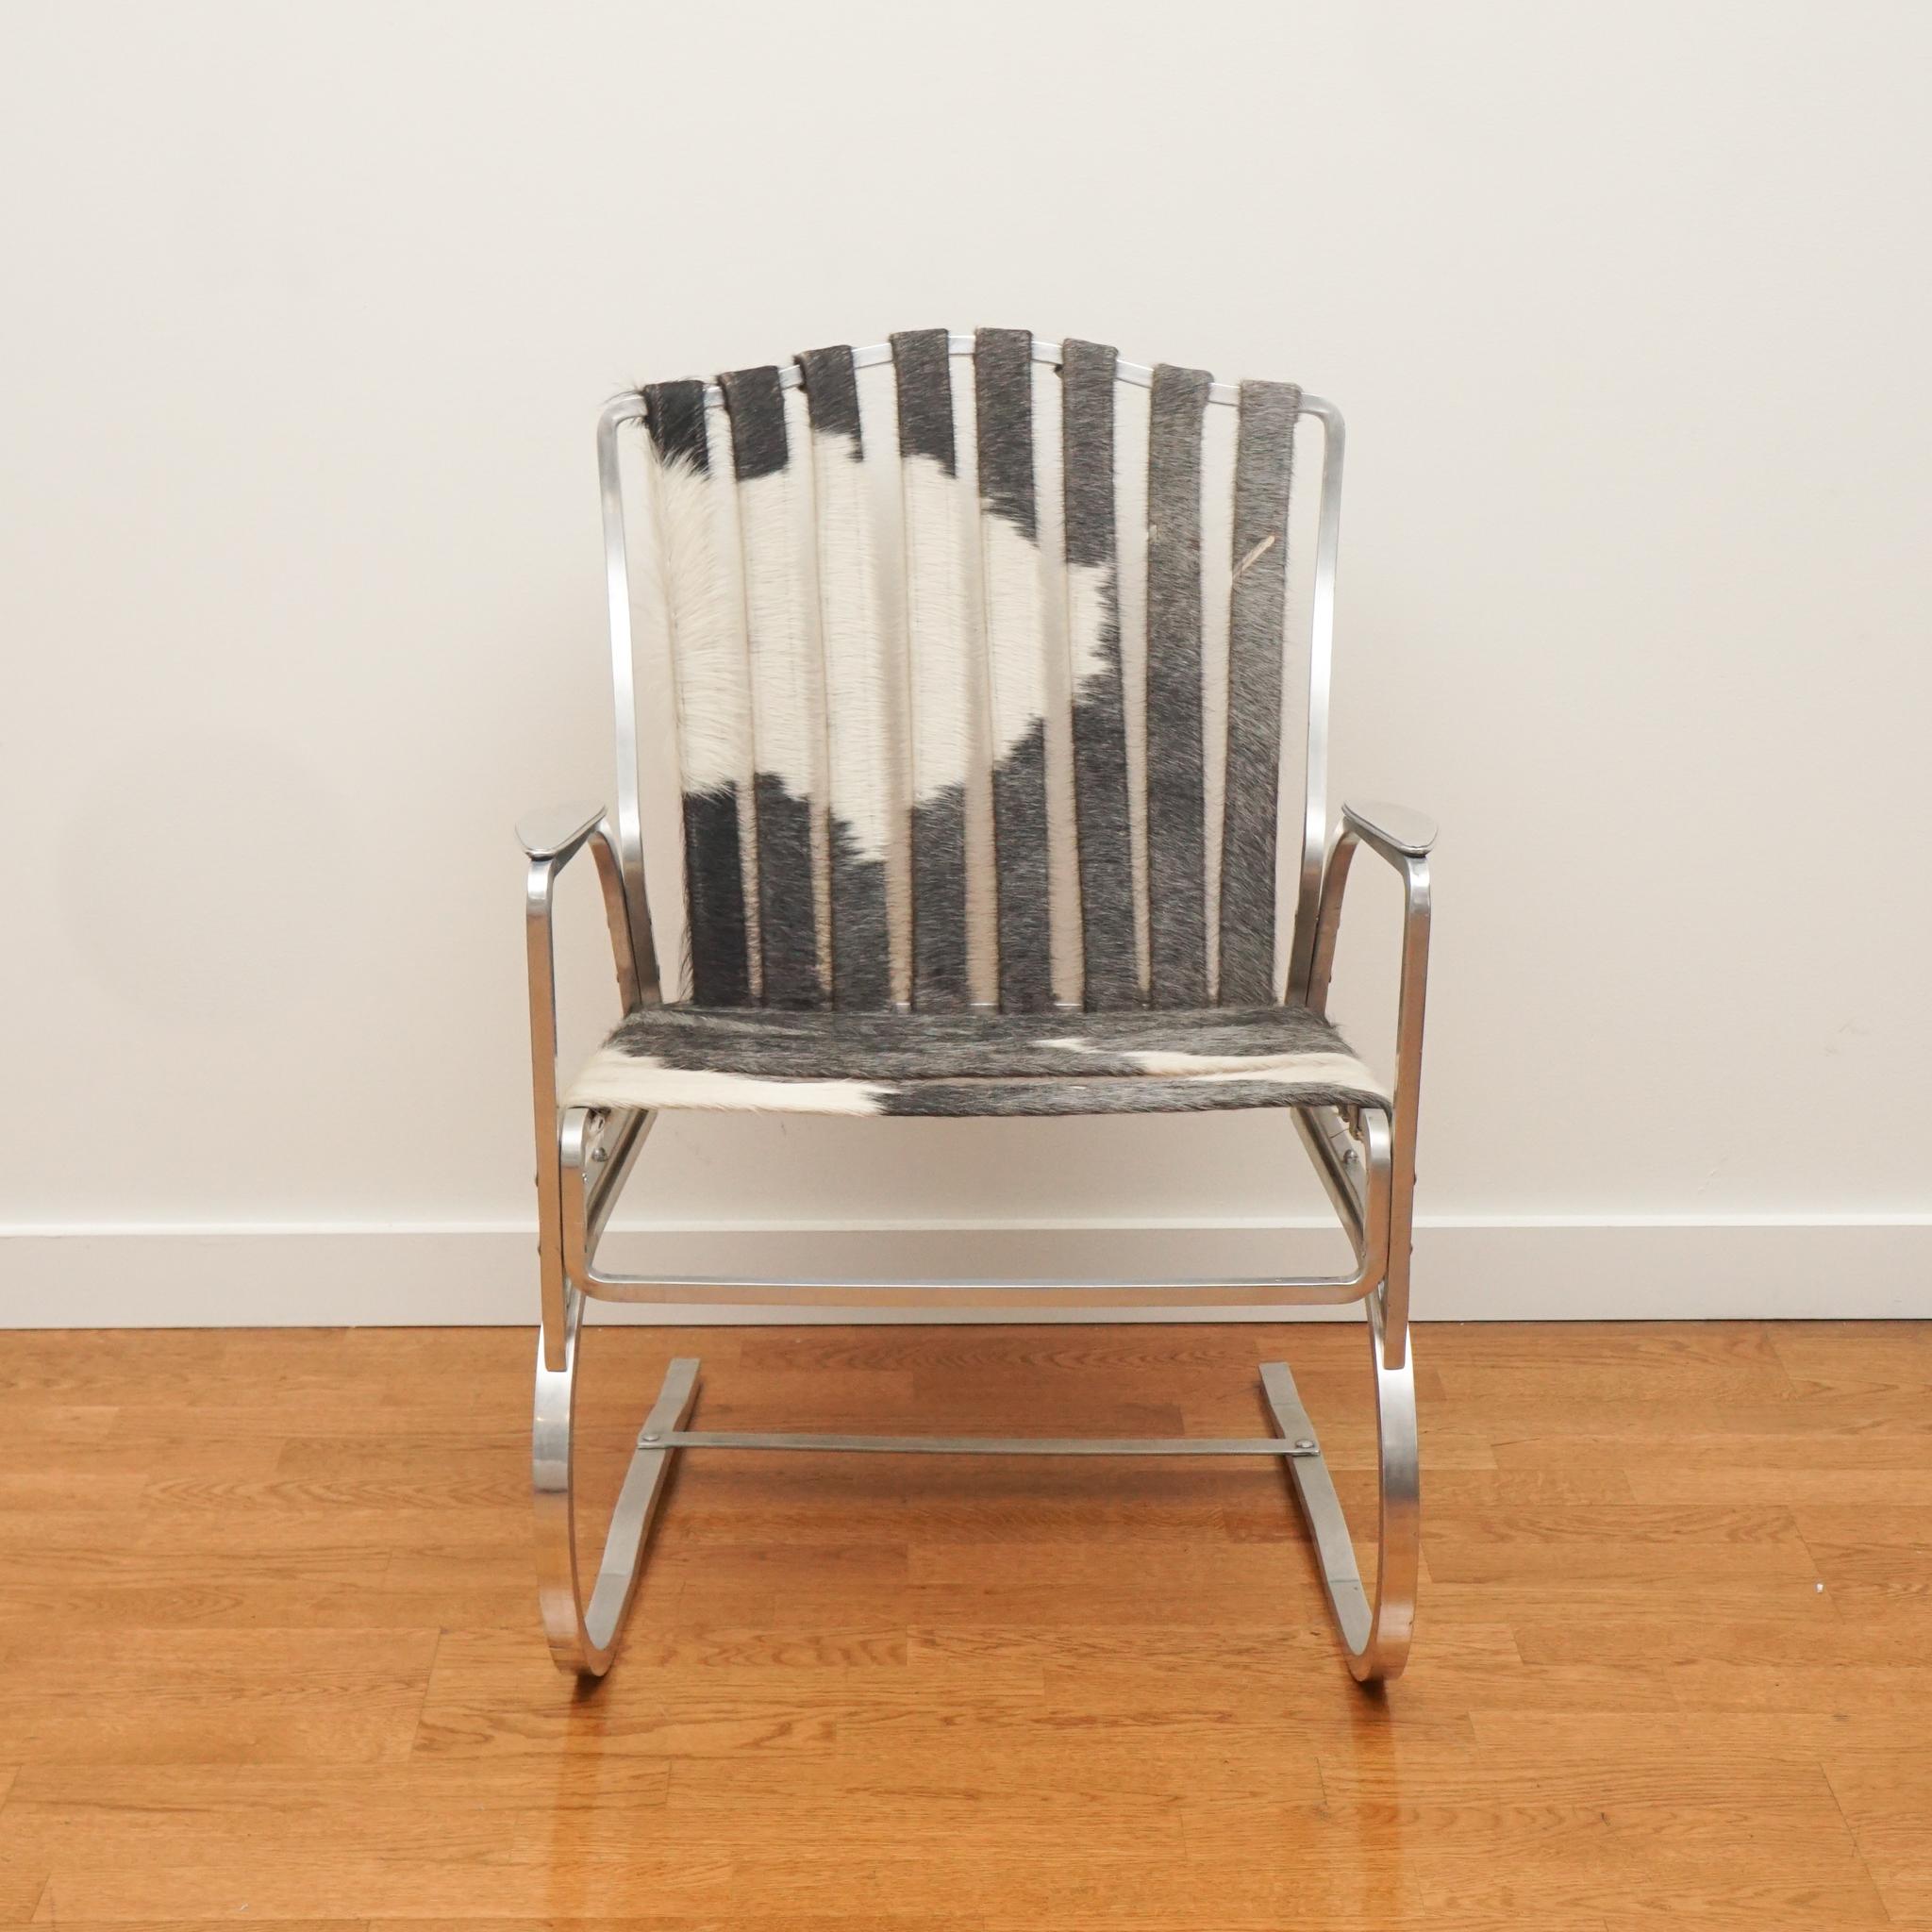 Le fauteuil en aluminium avec des sangles en peau de vache, présenté ici, date des années 1950. Malgré son âge, la chaise est en très bon état, depuis le cadre en aluminium jusqu'aux sangles en peau de vache d'origine. Si vous êtes à la recherche